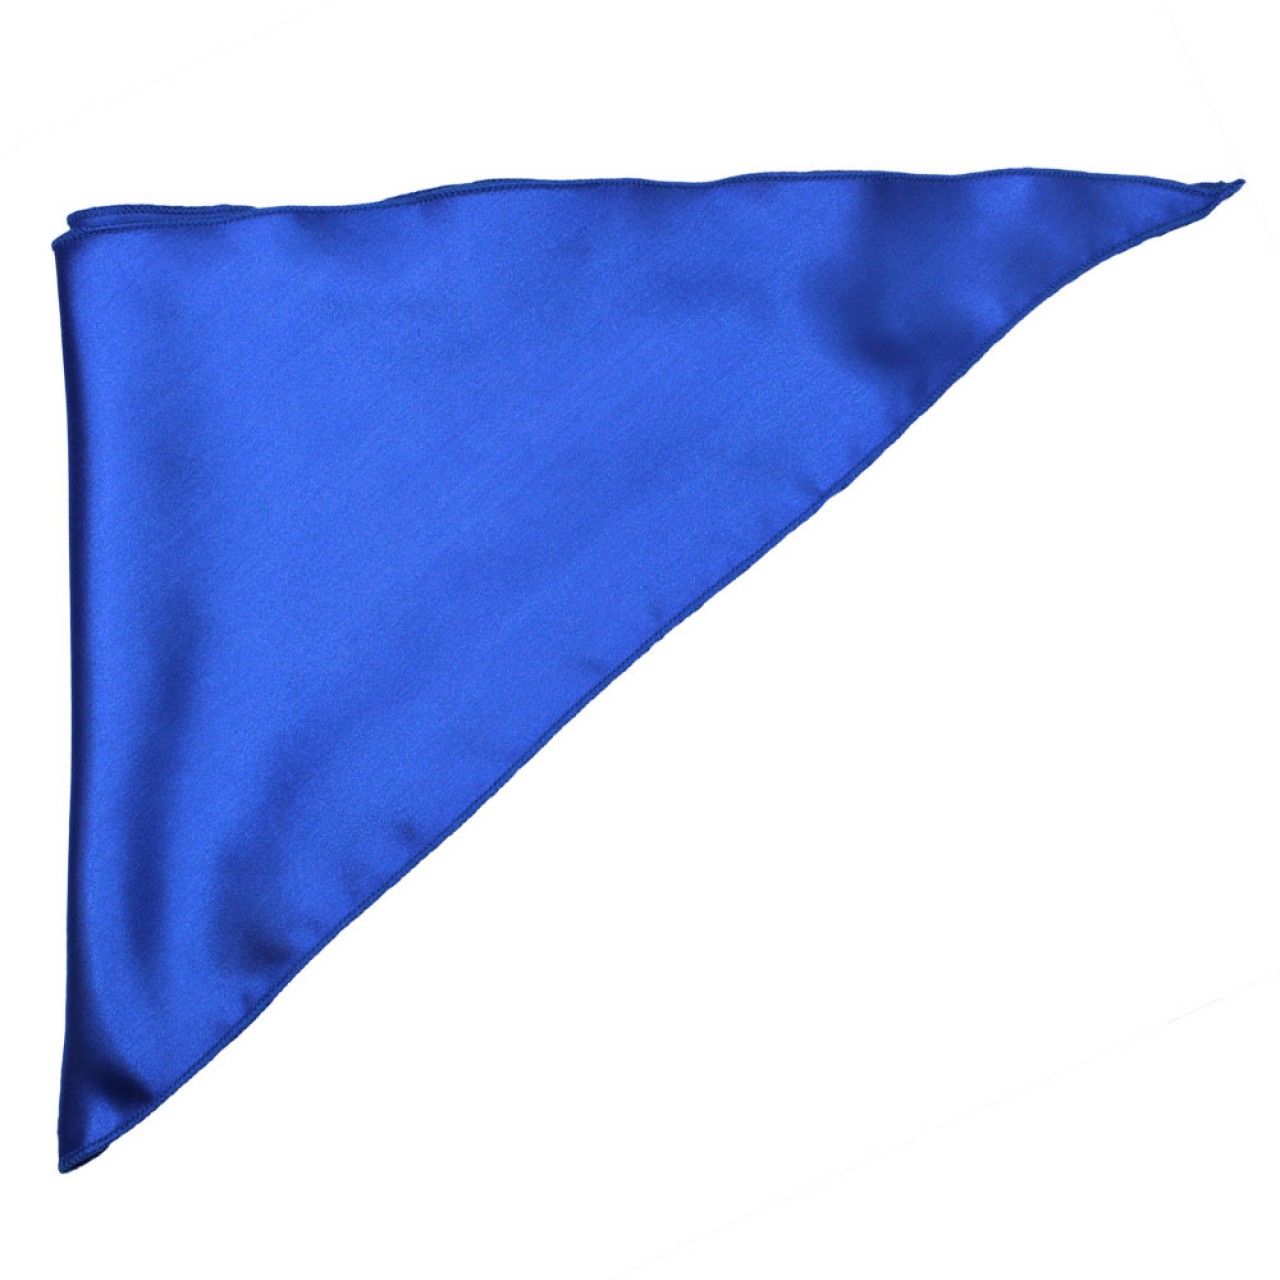 Σατέν Φουλάρι Μαντήλι Παρέλασης Τρίγωνο 92cm x 58cm Μπλε Ρουά JFWSCARF3